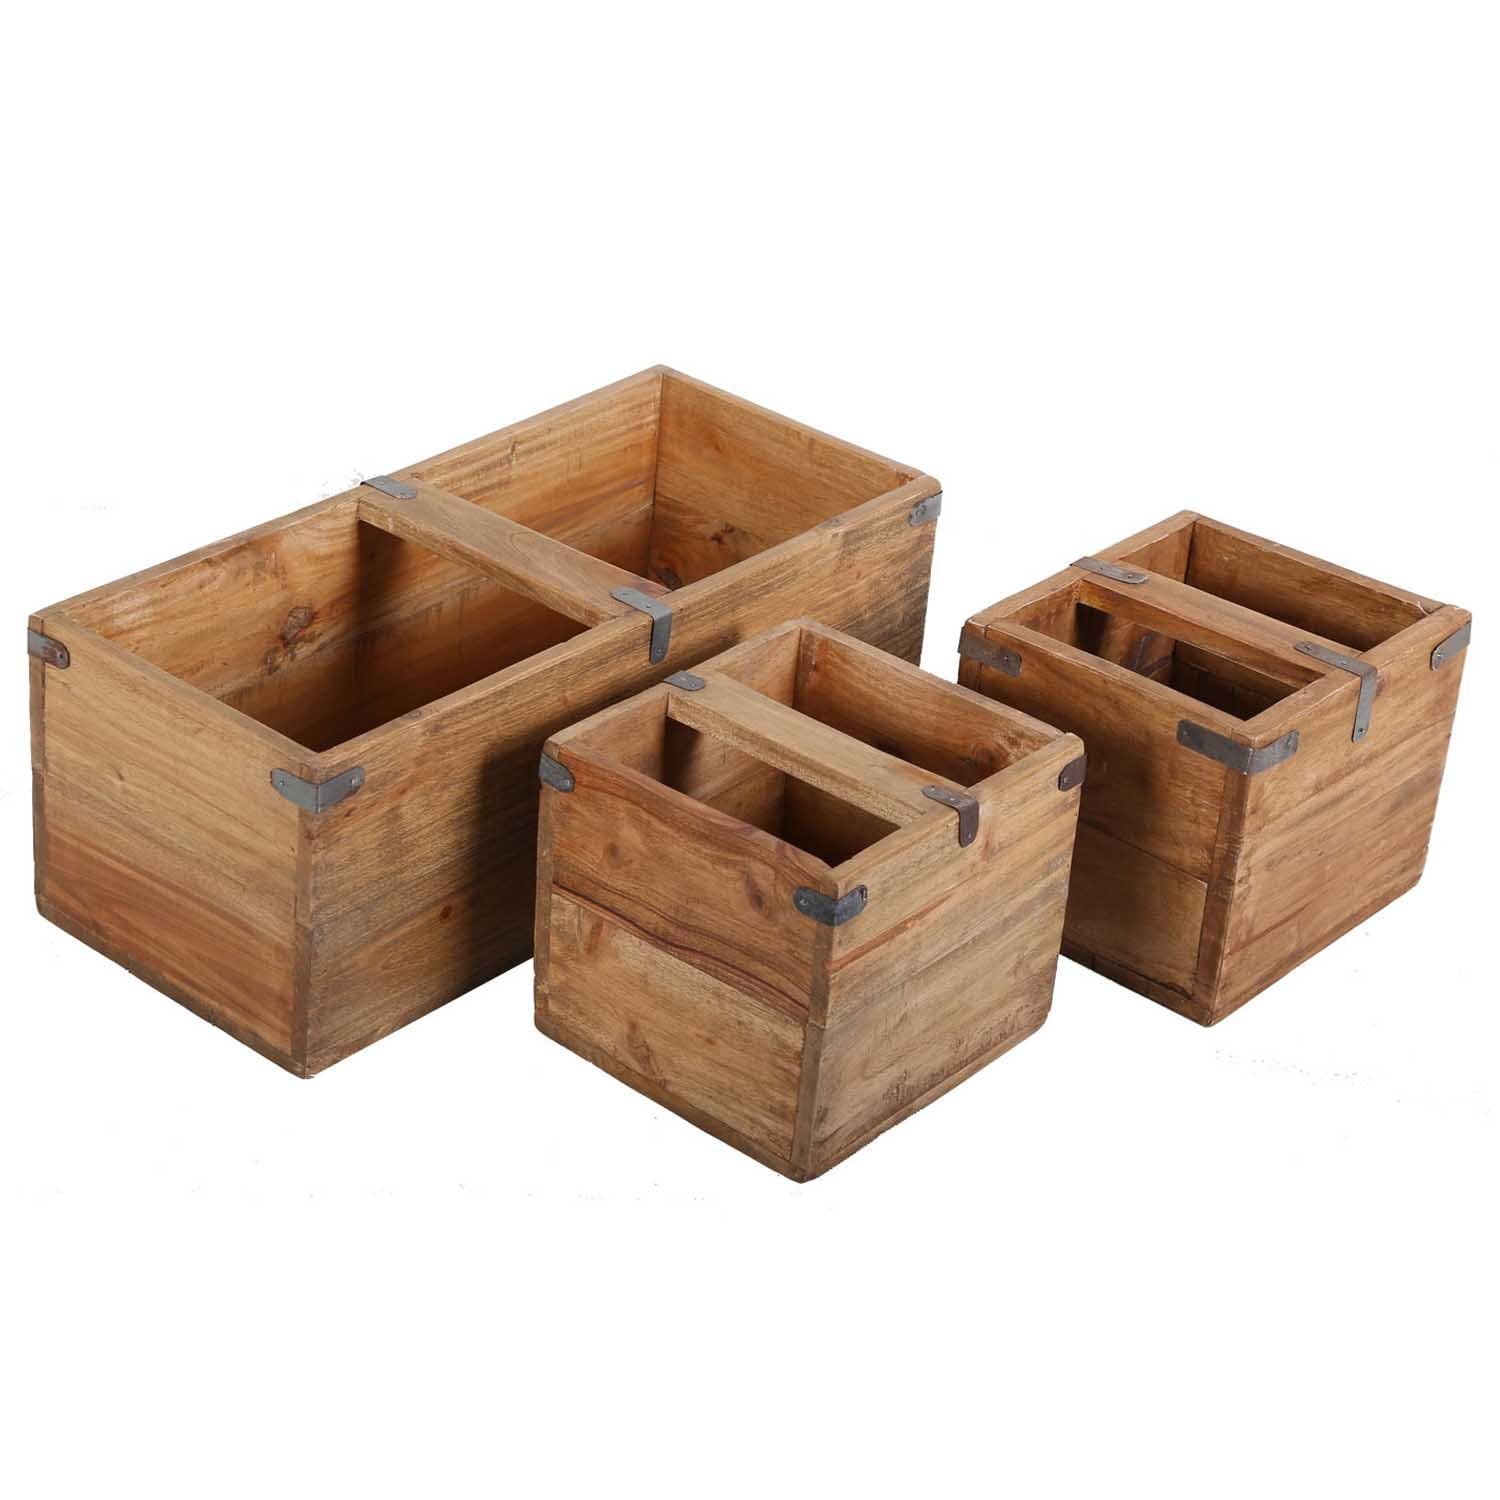 Casa Möbelkiste Teak Deko recyceltem Holz Box, Holz 3er Kiste Holzbox Moro Set Teak gefertigt Enzo aus Balkonkasten